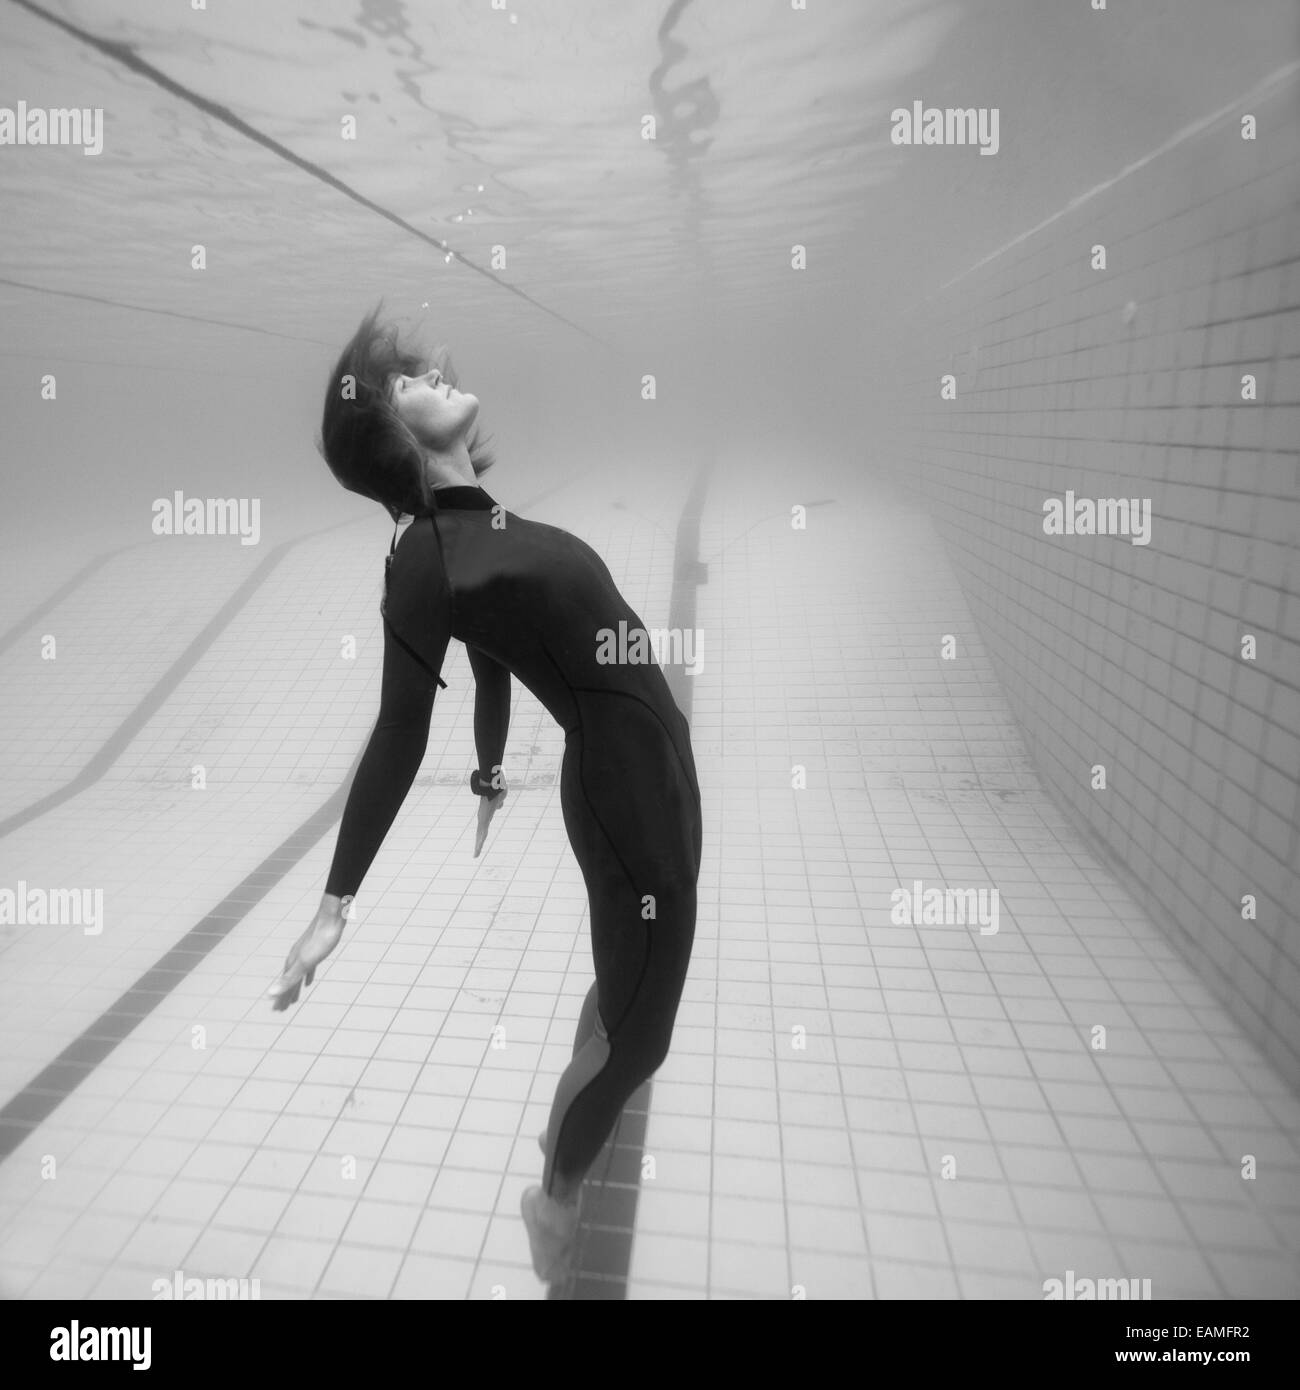 Immagine in bianco e nero di sub femmina appaiono essere sospesa nello spazio mentre sott'acqua nella piscina siwmming Foto Stock